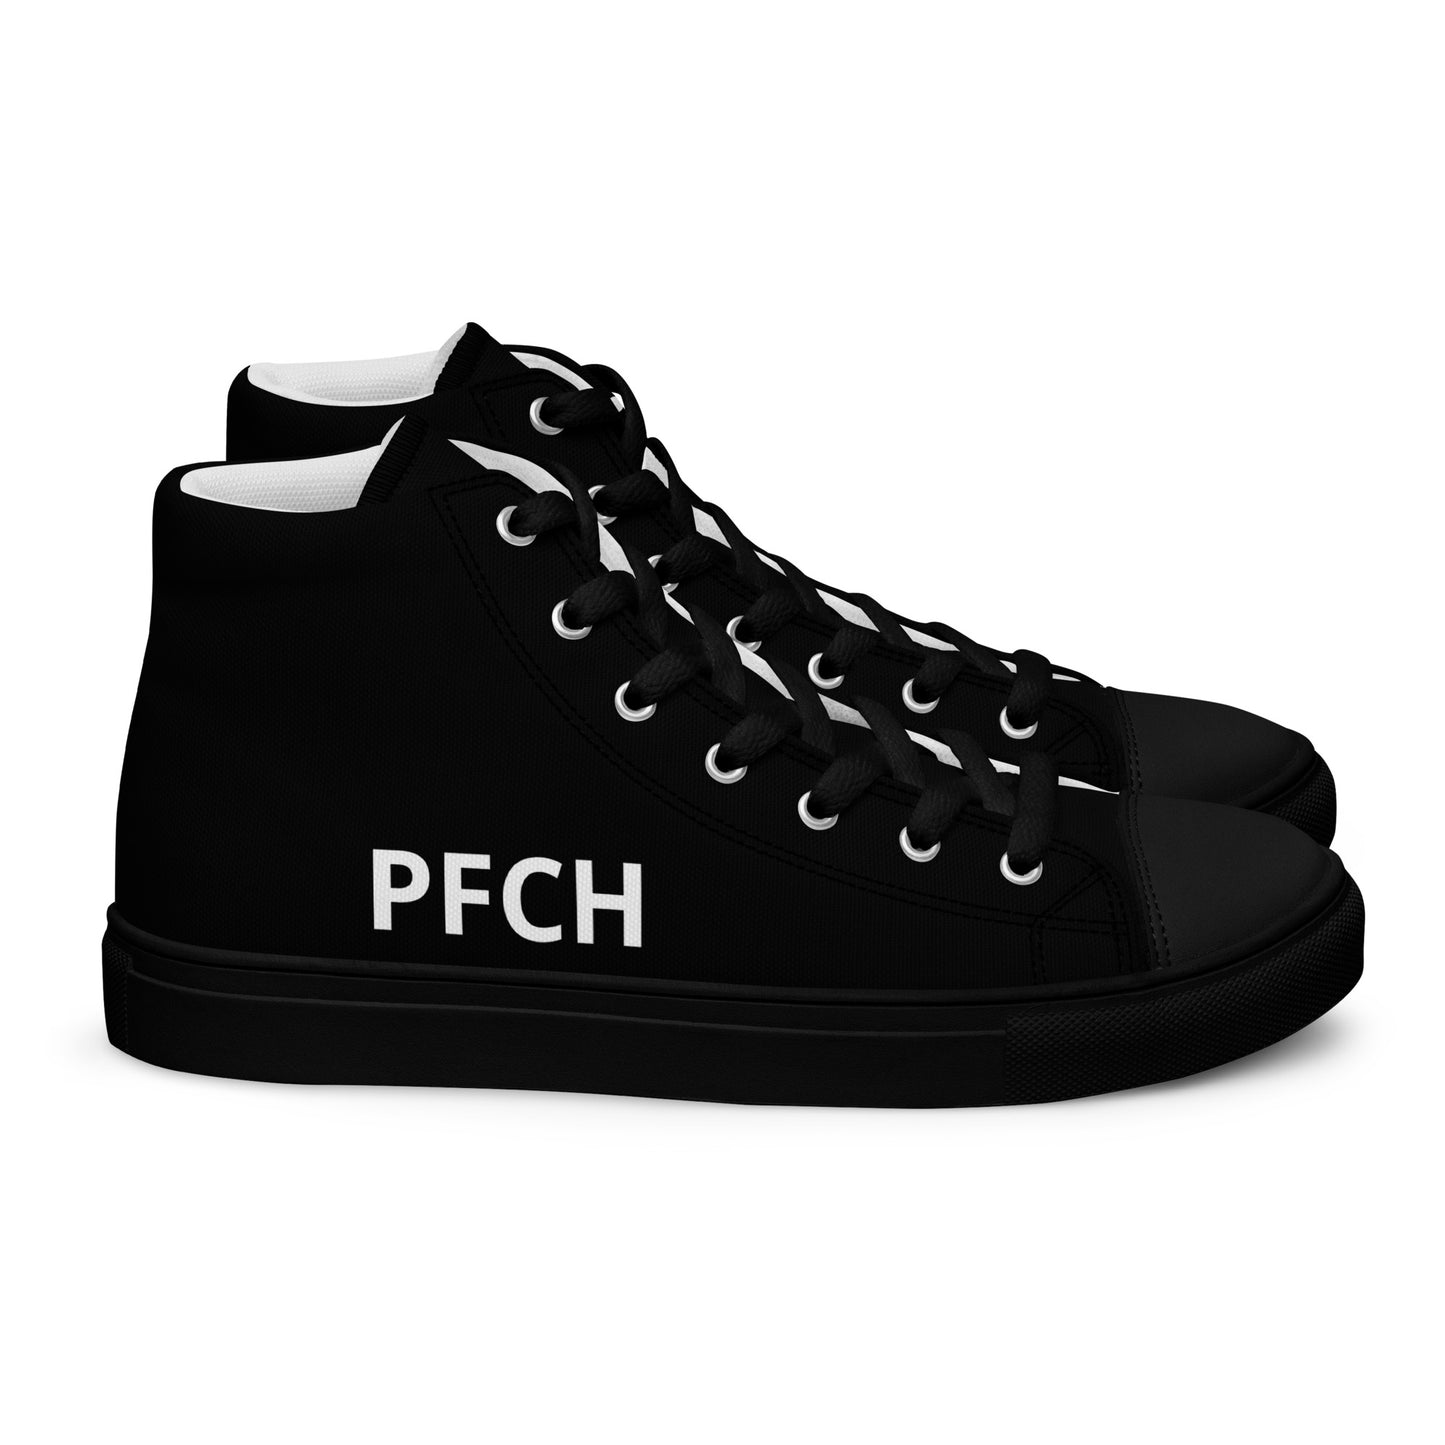 PFCH - Perpetual Footwear